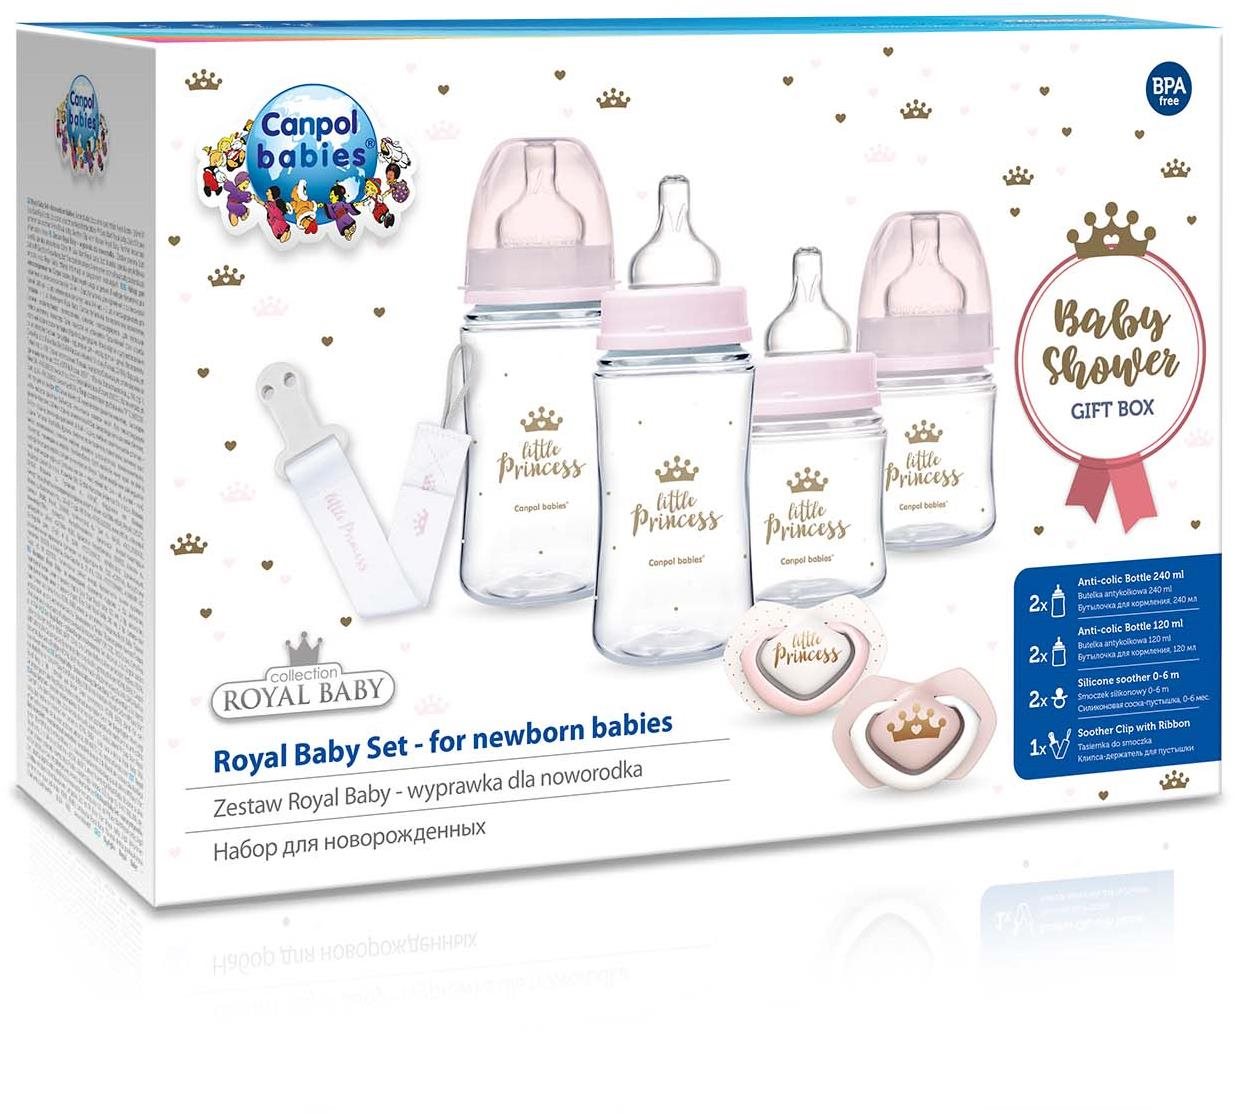 Canpol babies Royal Baby ajándékkészlet újszülött számára, rózsaszín